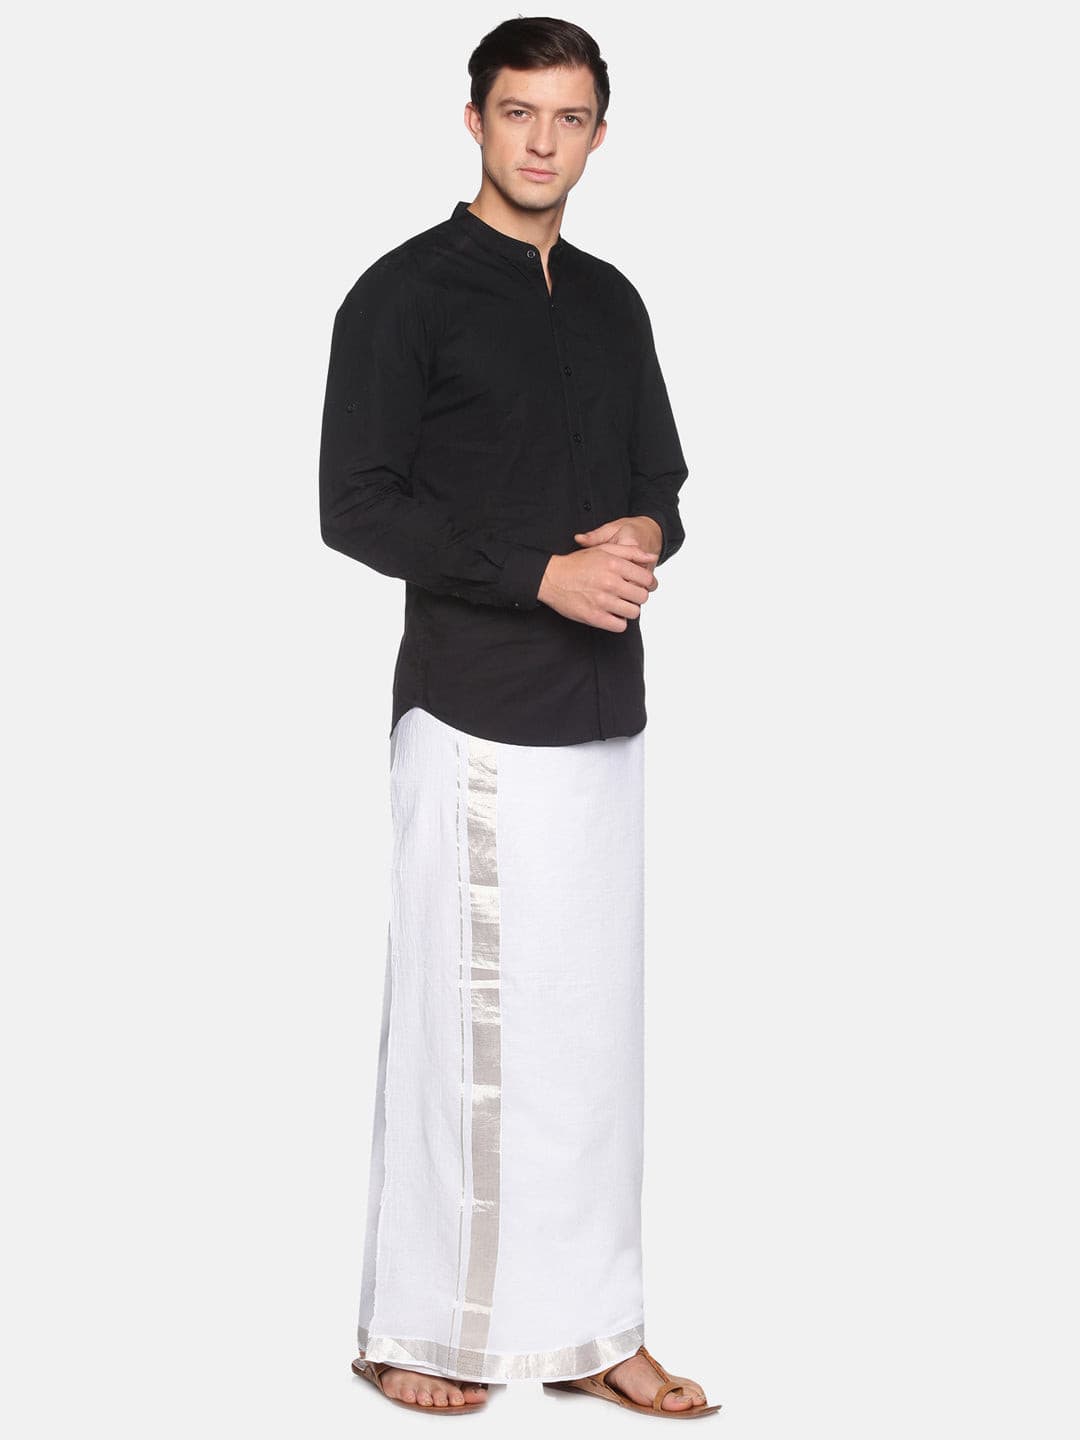 Cream plain design kerala mundu set with contrast intricate zari border